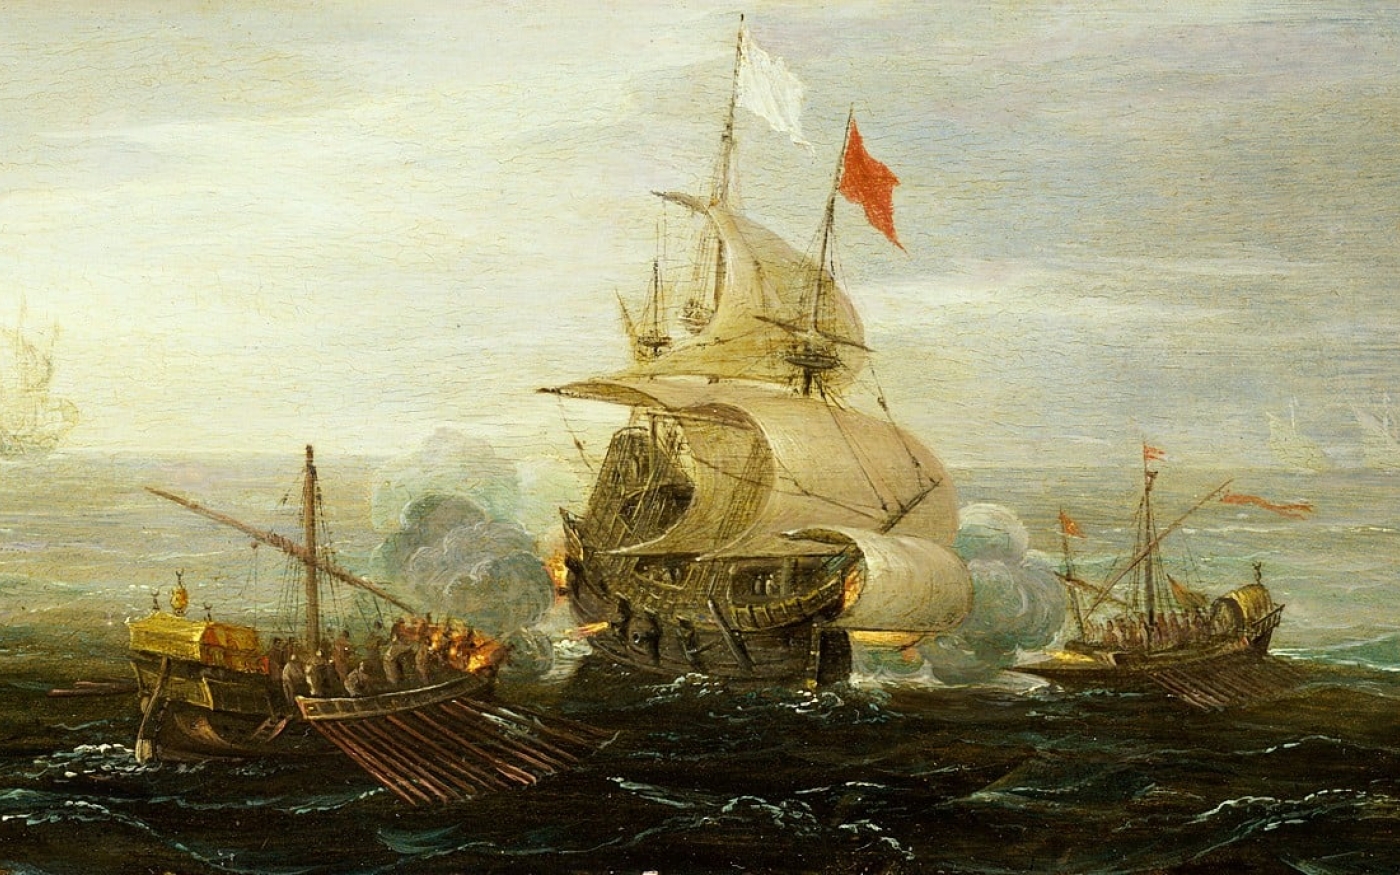 Un navire français attaqué par des pirates barbaresques, peinture de 1615 attribuée à l’artiste Aert Anthonisz ou Cornelis Bol (National Maritime Museum, Londres)